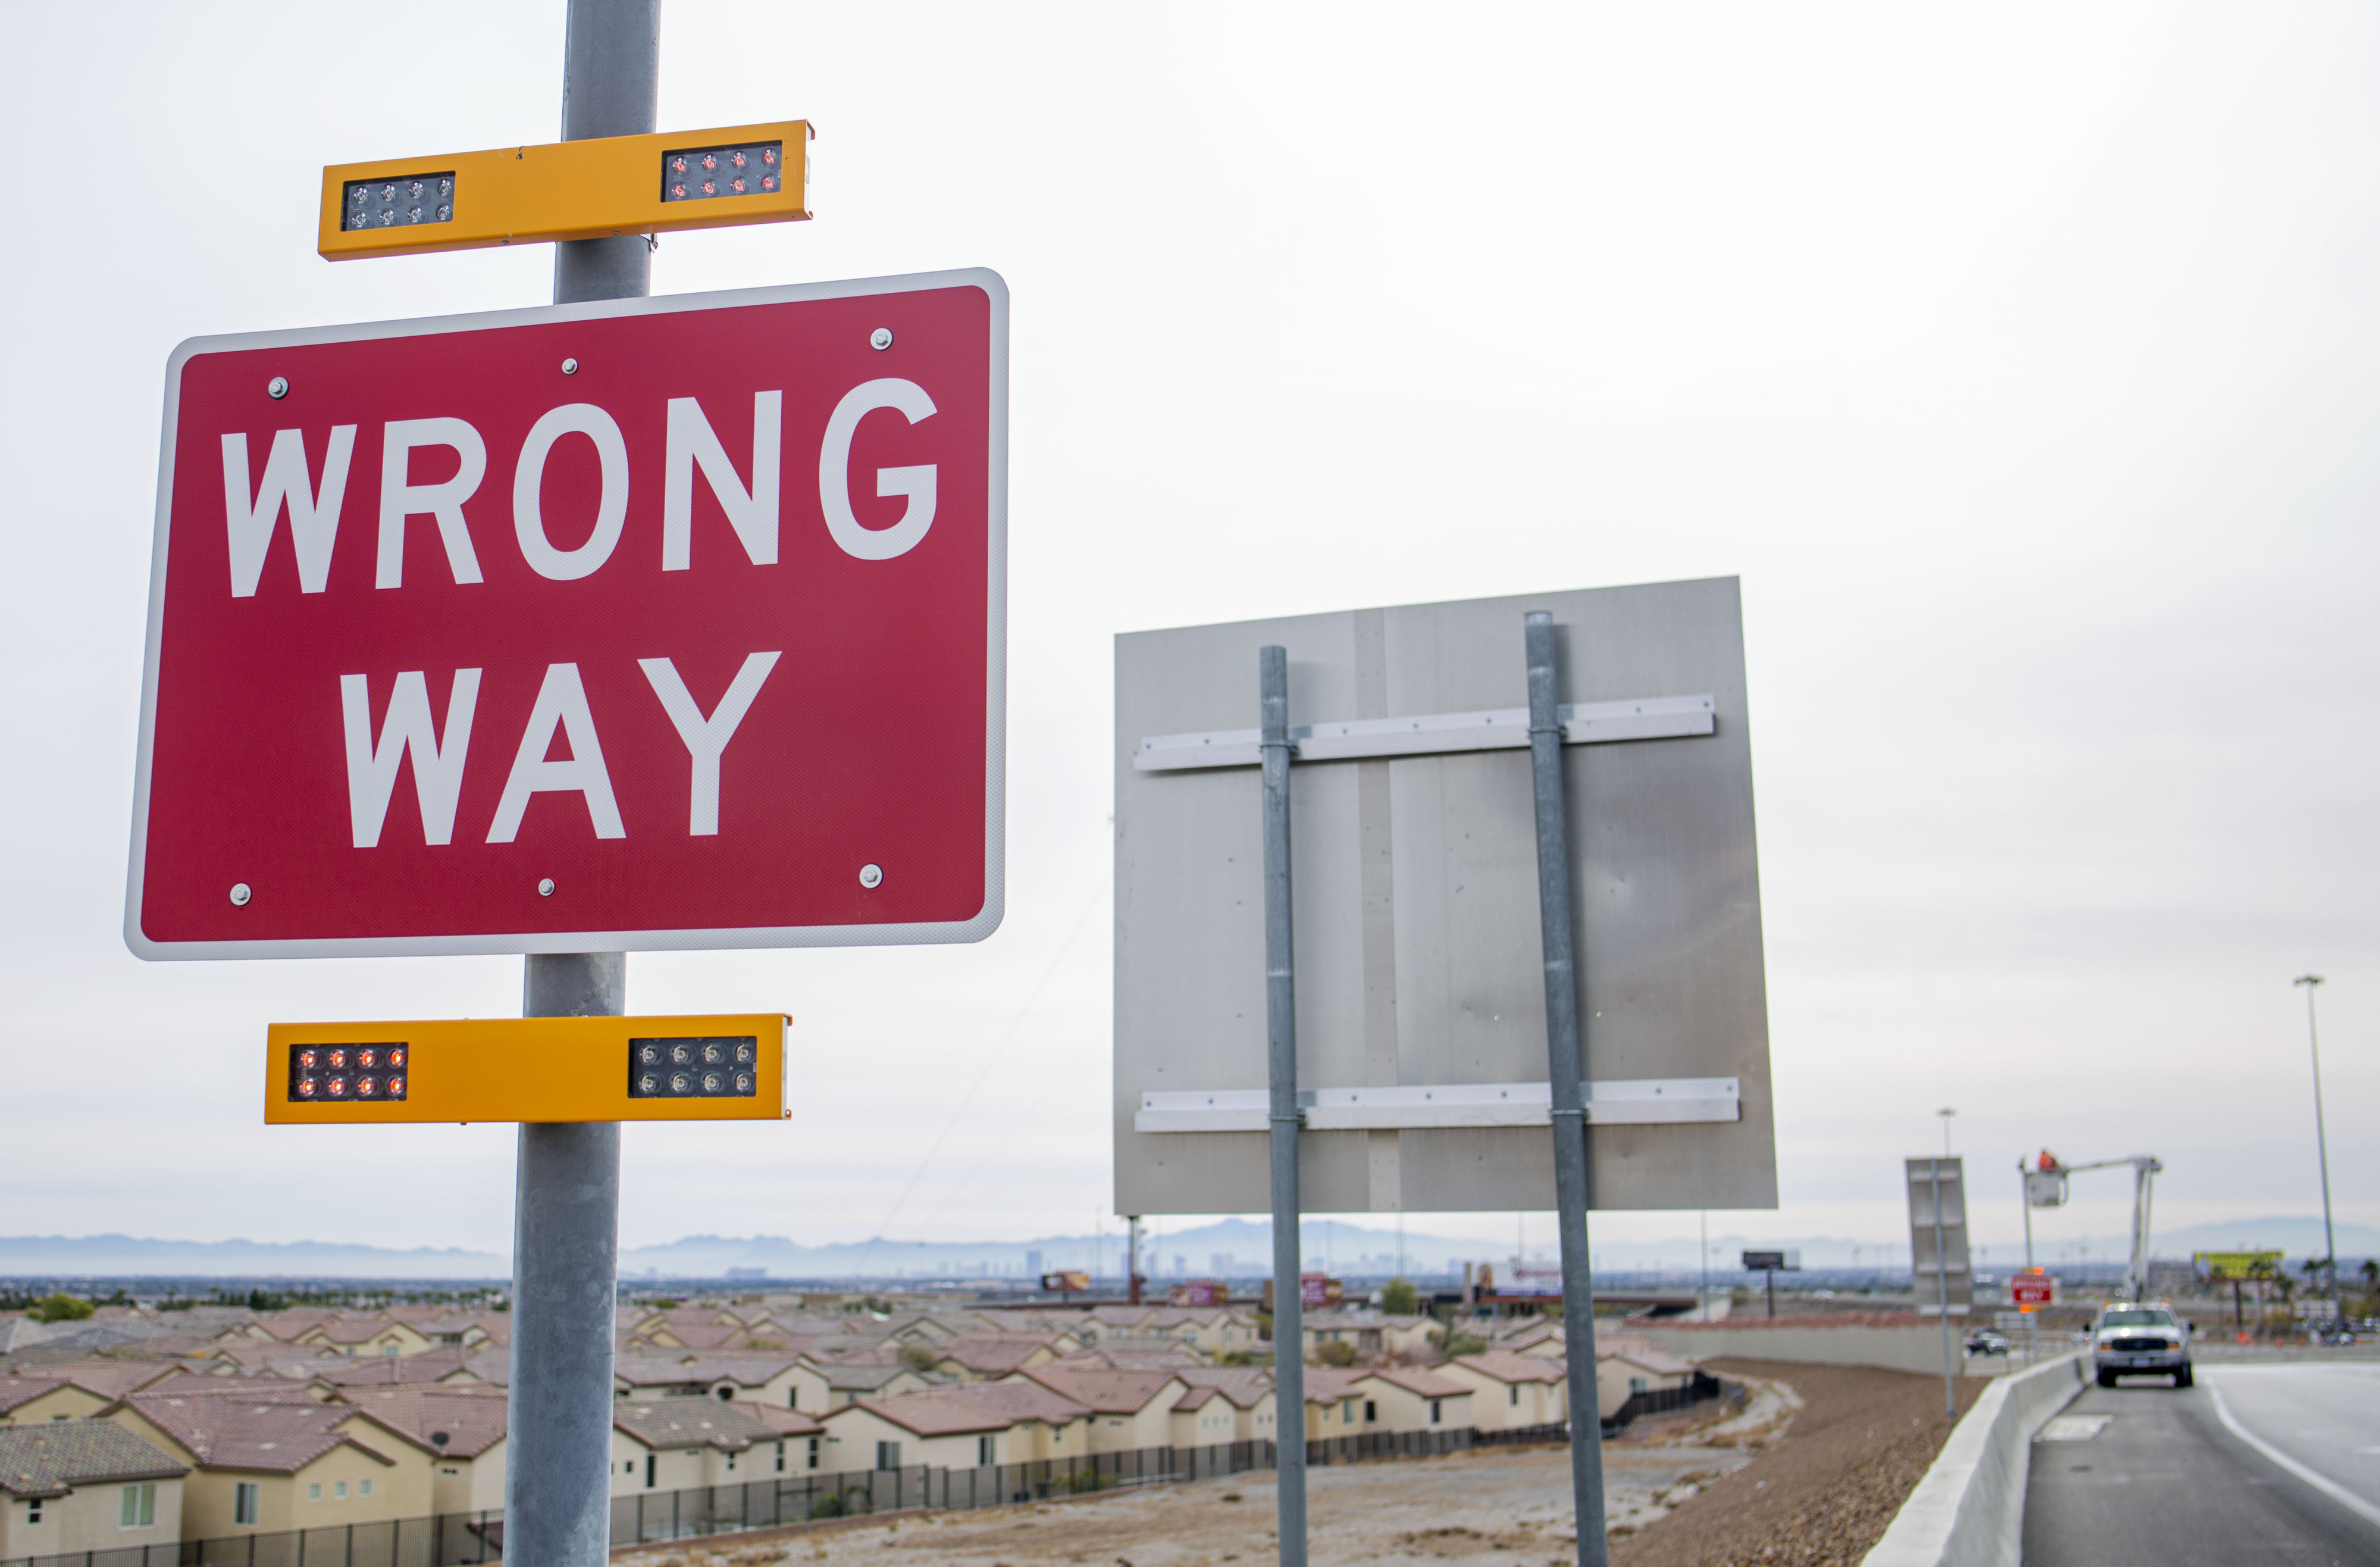 Cara yang salah sistem pelacakan pengemudi datang ke beberapa persimpangan Southern Nevada